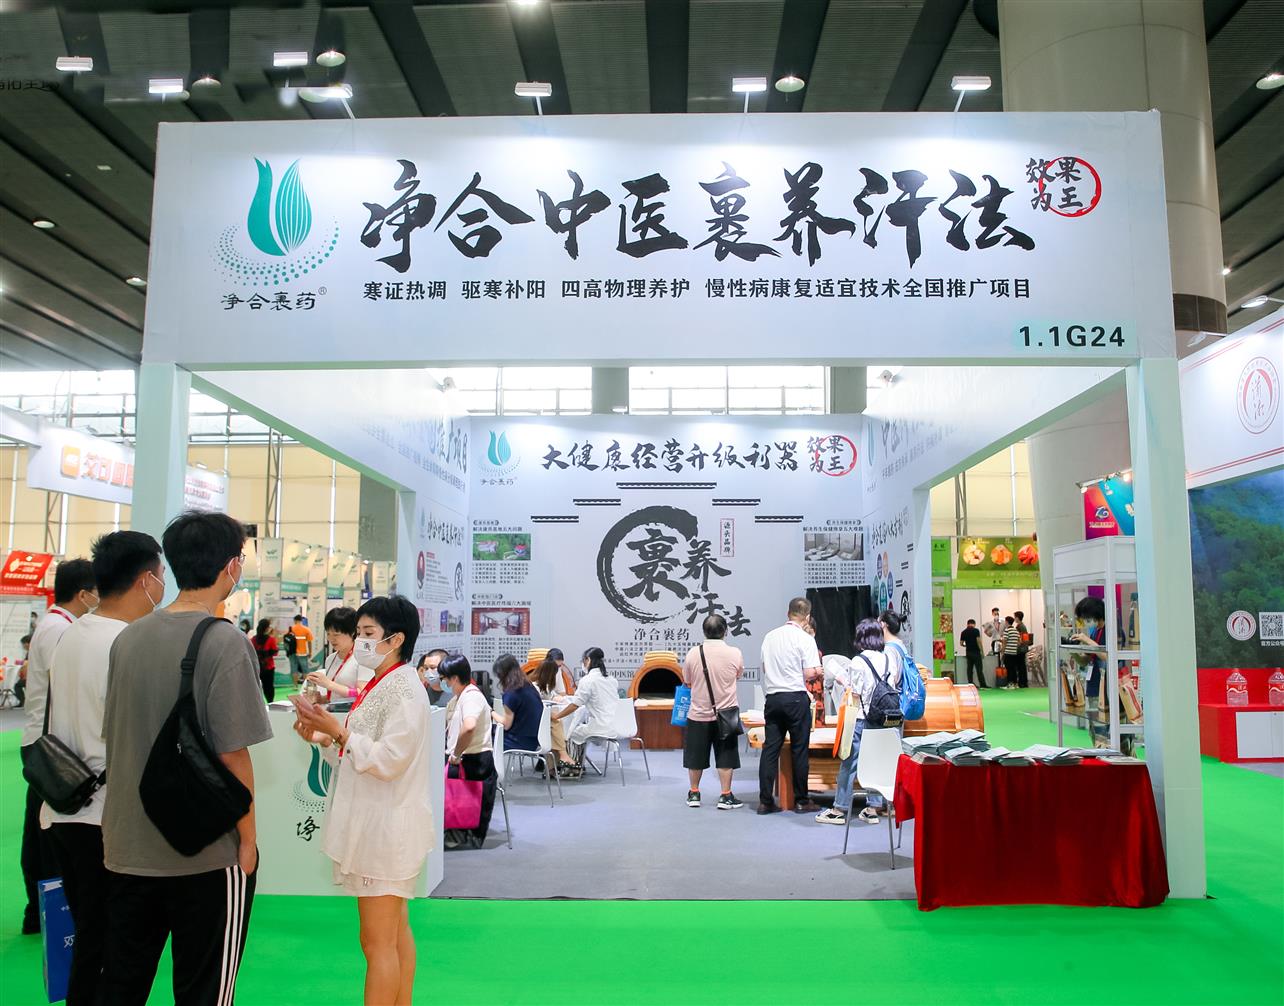 2022蜂蜜展览会|2022营养健康博览会|2022年中国健康产业博览会